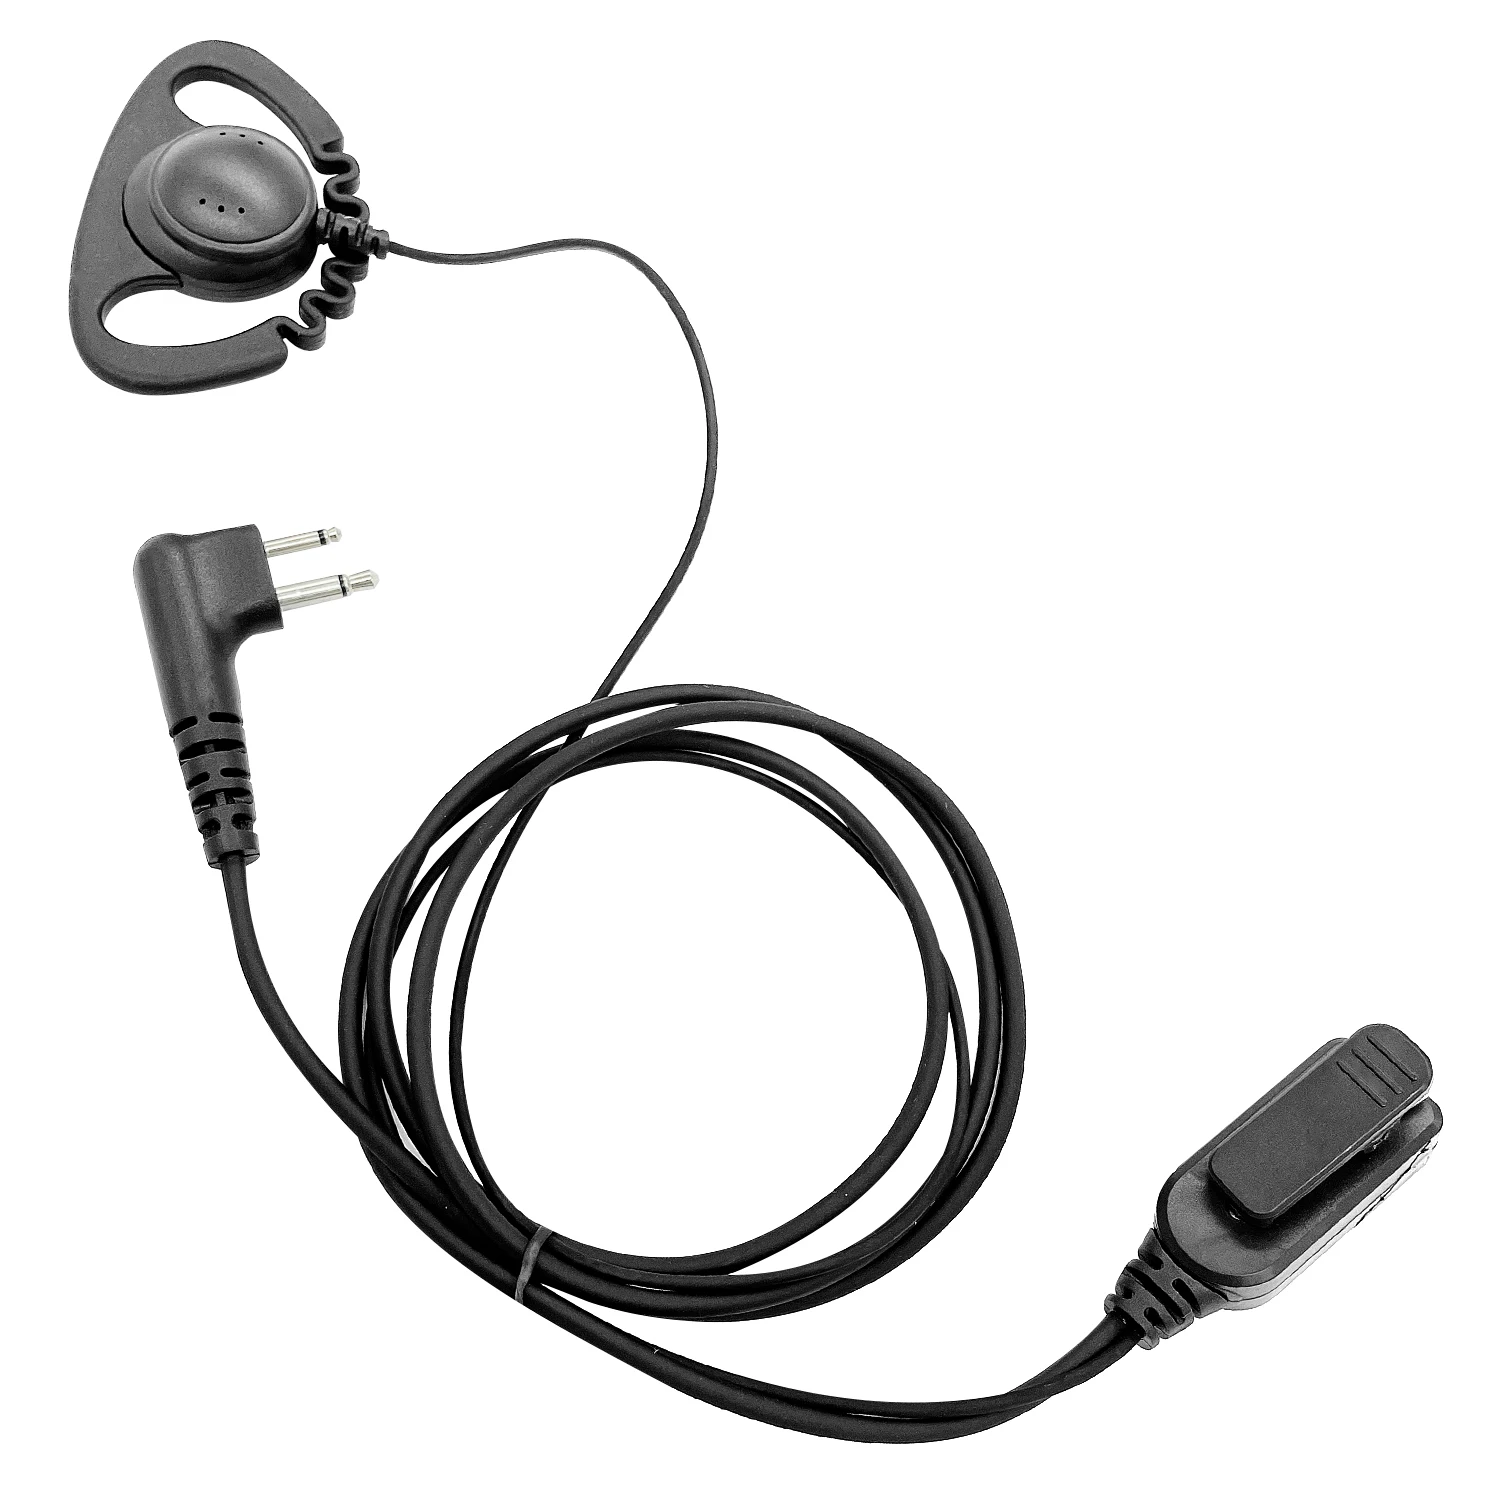 Type D Headphones Walkie Talkie Accessories Earpiece for Motorola P040,P080,P110,P1225,P1255LS,P200 Two Way Radio Earphone